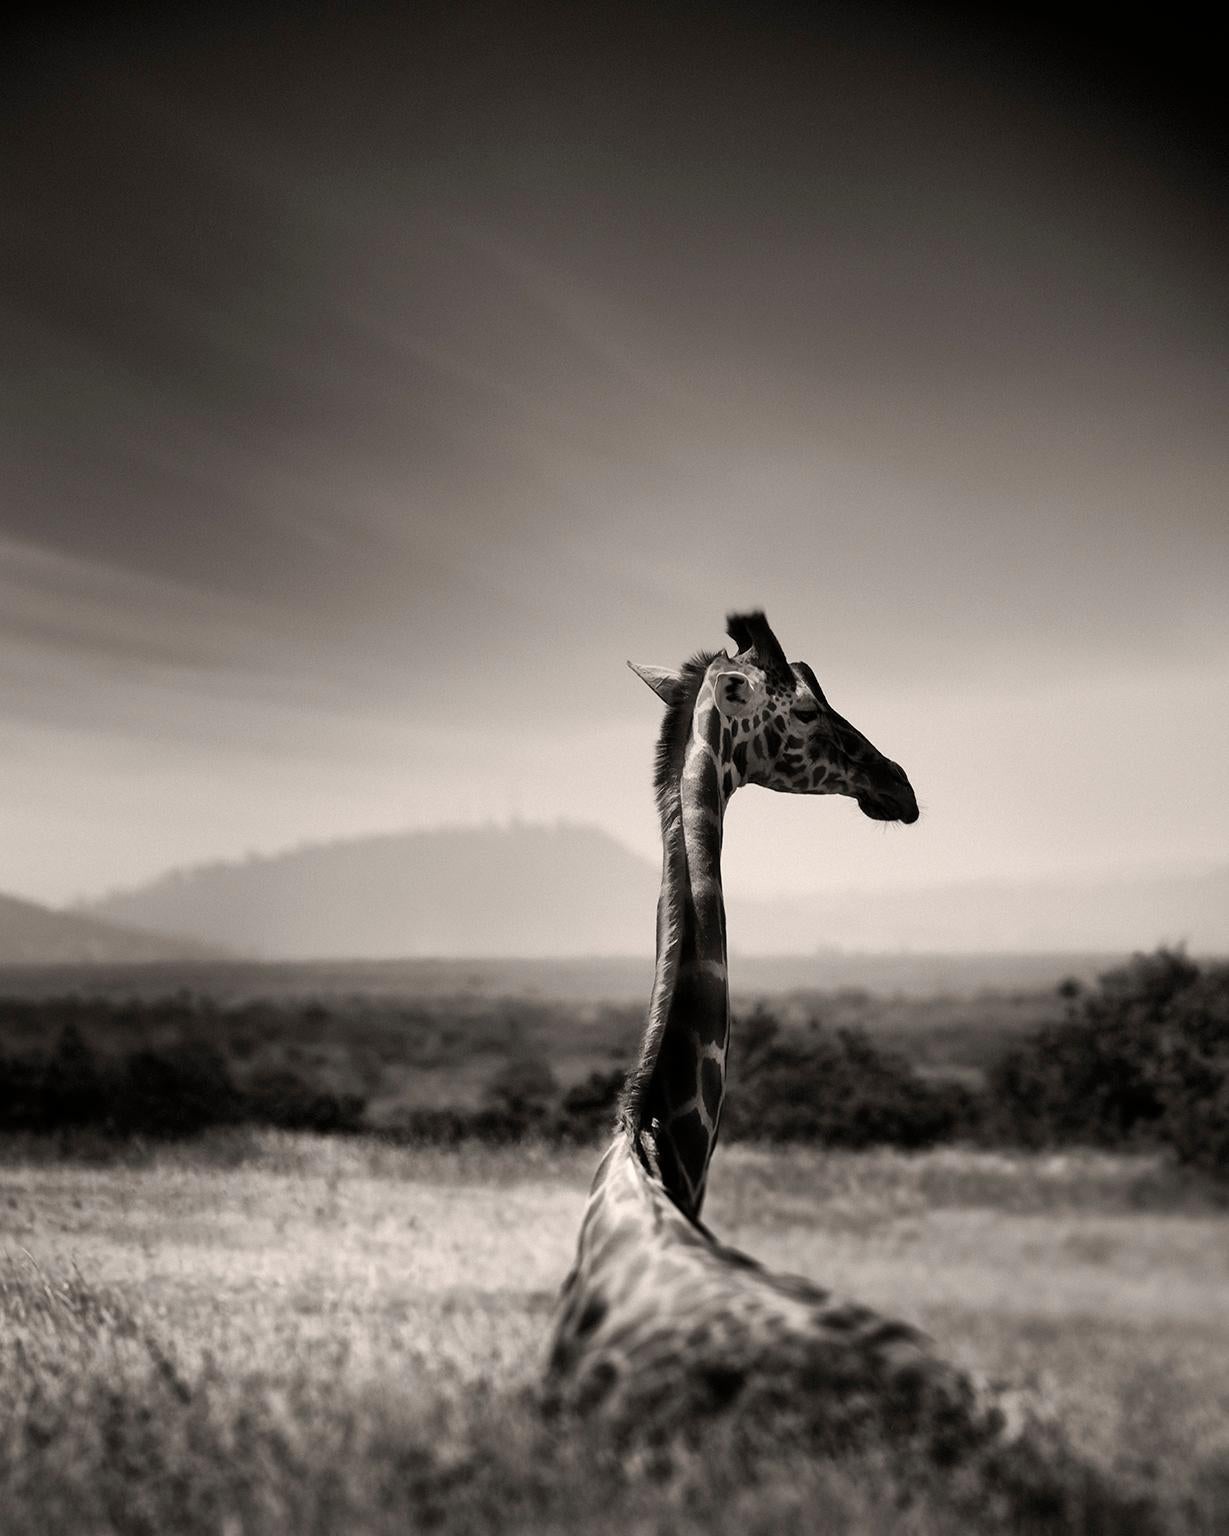 Joachim Schmeisser Black and White Photograph – Giraffen in Gras, Giraffen, Tier, Afrika, Schwarz-Weiß-Fotografie